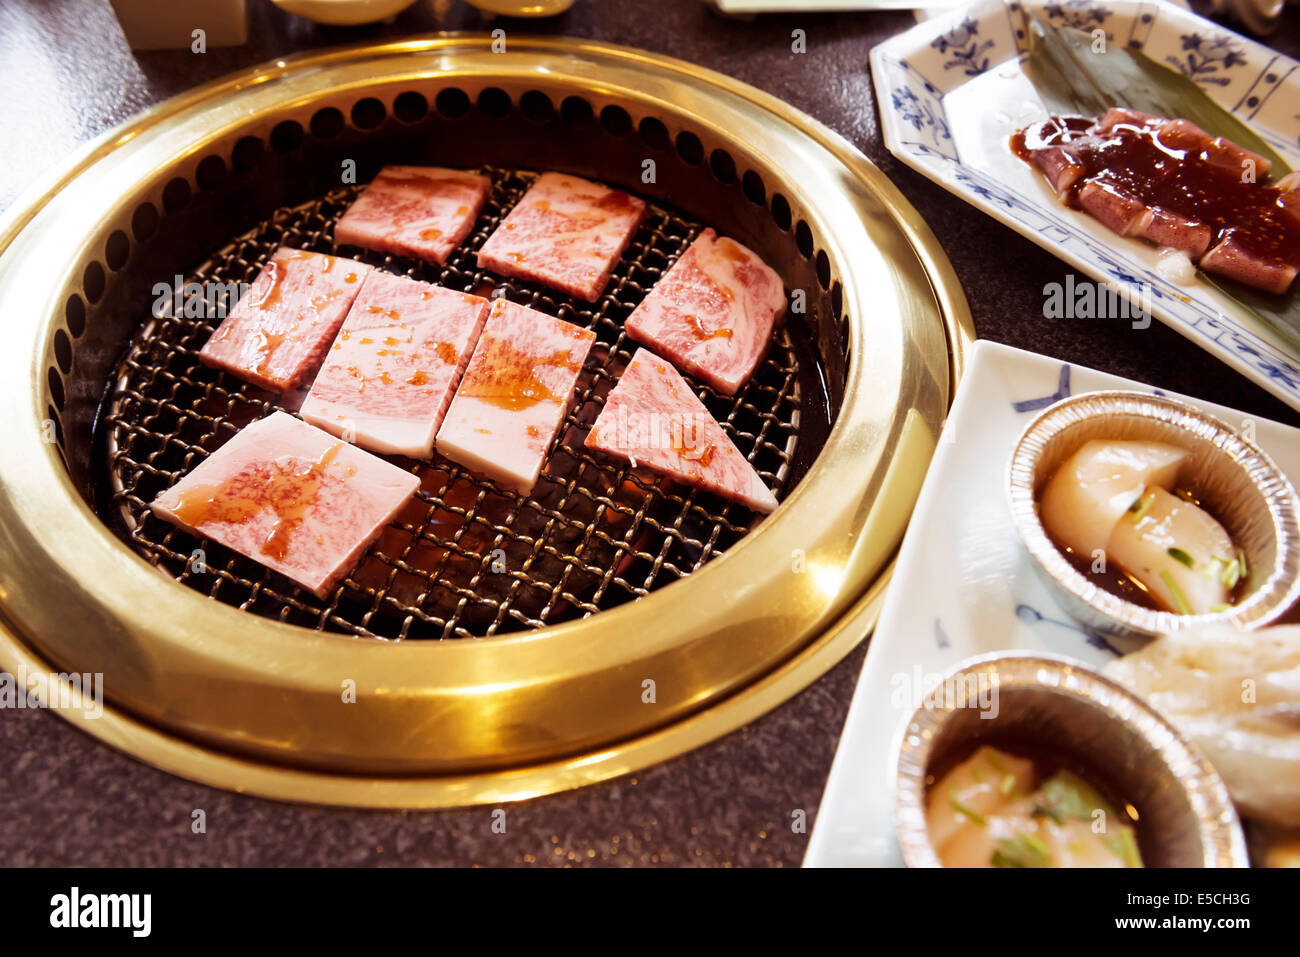 Rindfleisch auf einem Herd in einem japanischen Restaurant Grill gekocht wird. Yakiniku, japanischen Grill. Stockfoto